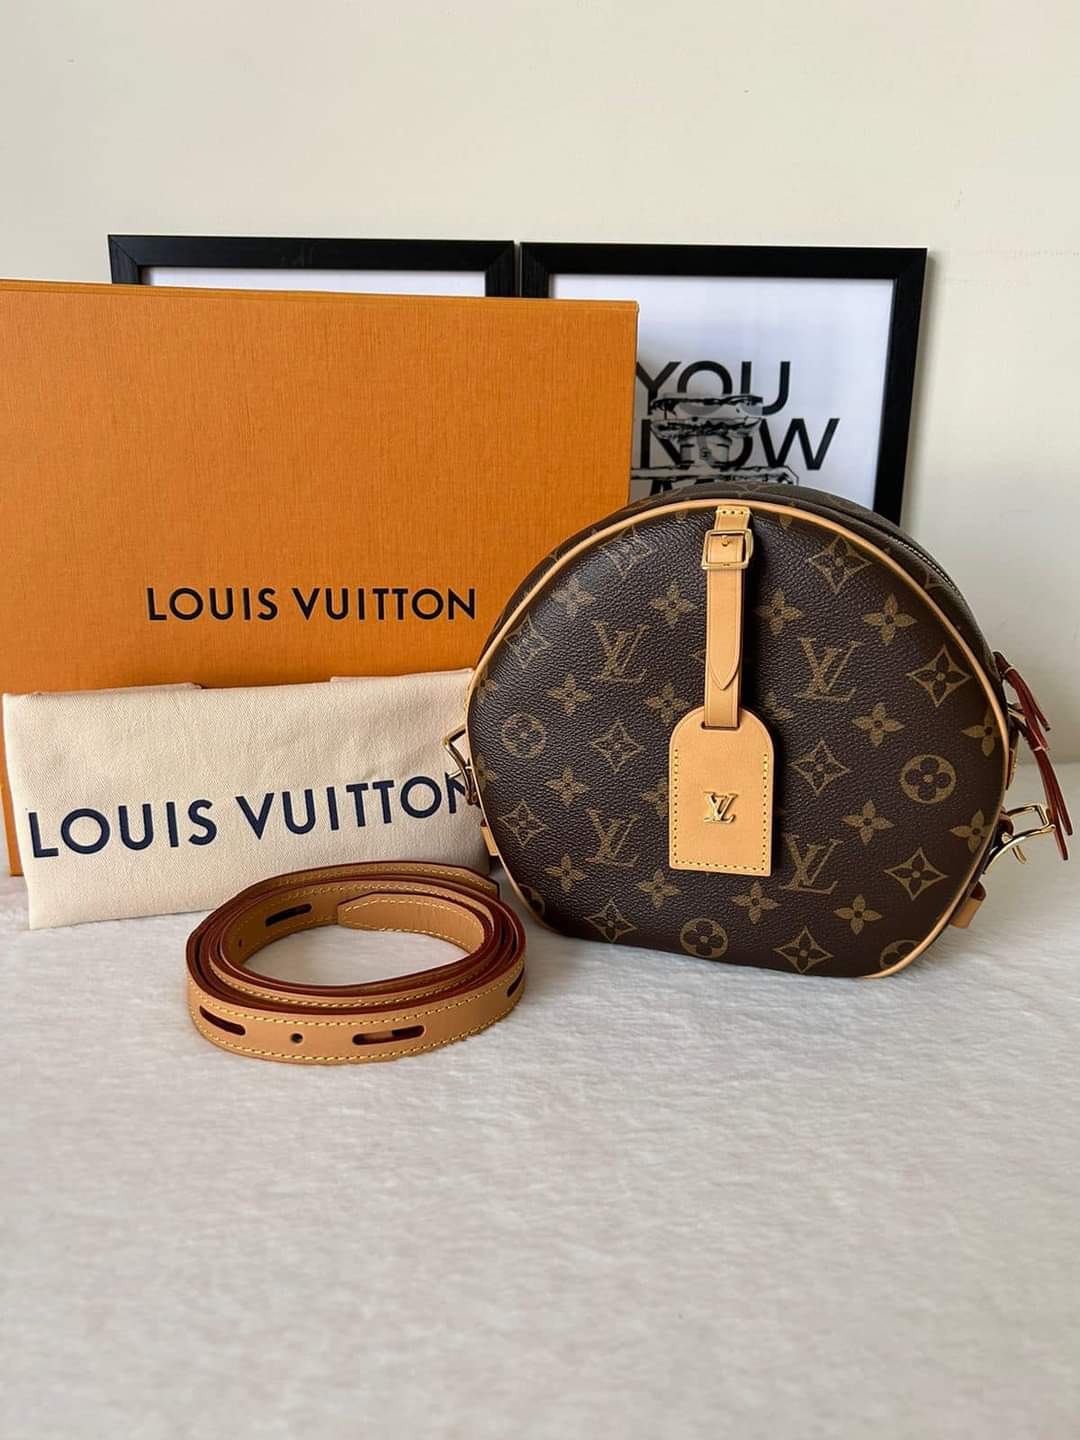 Louis Vuitton Boite Chapeau Souple mm Monogram